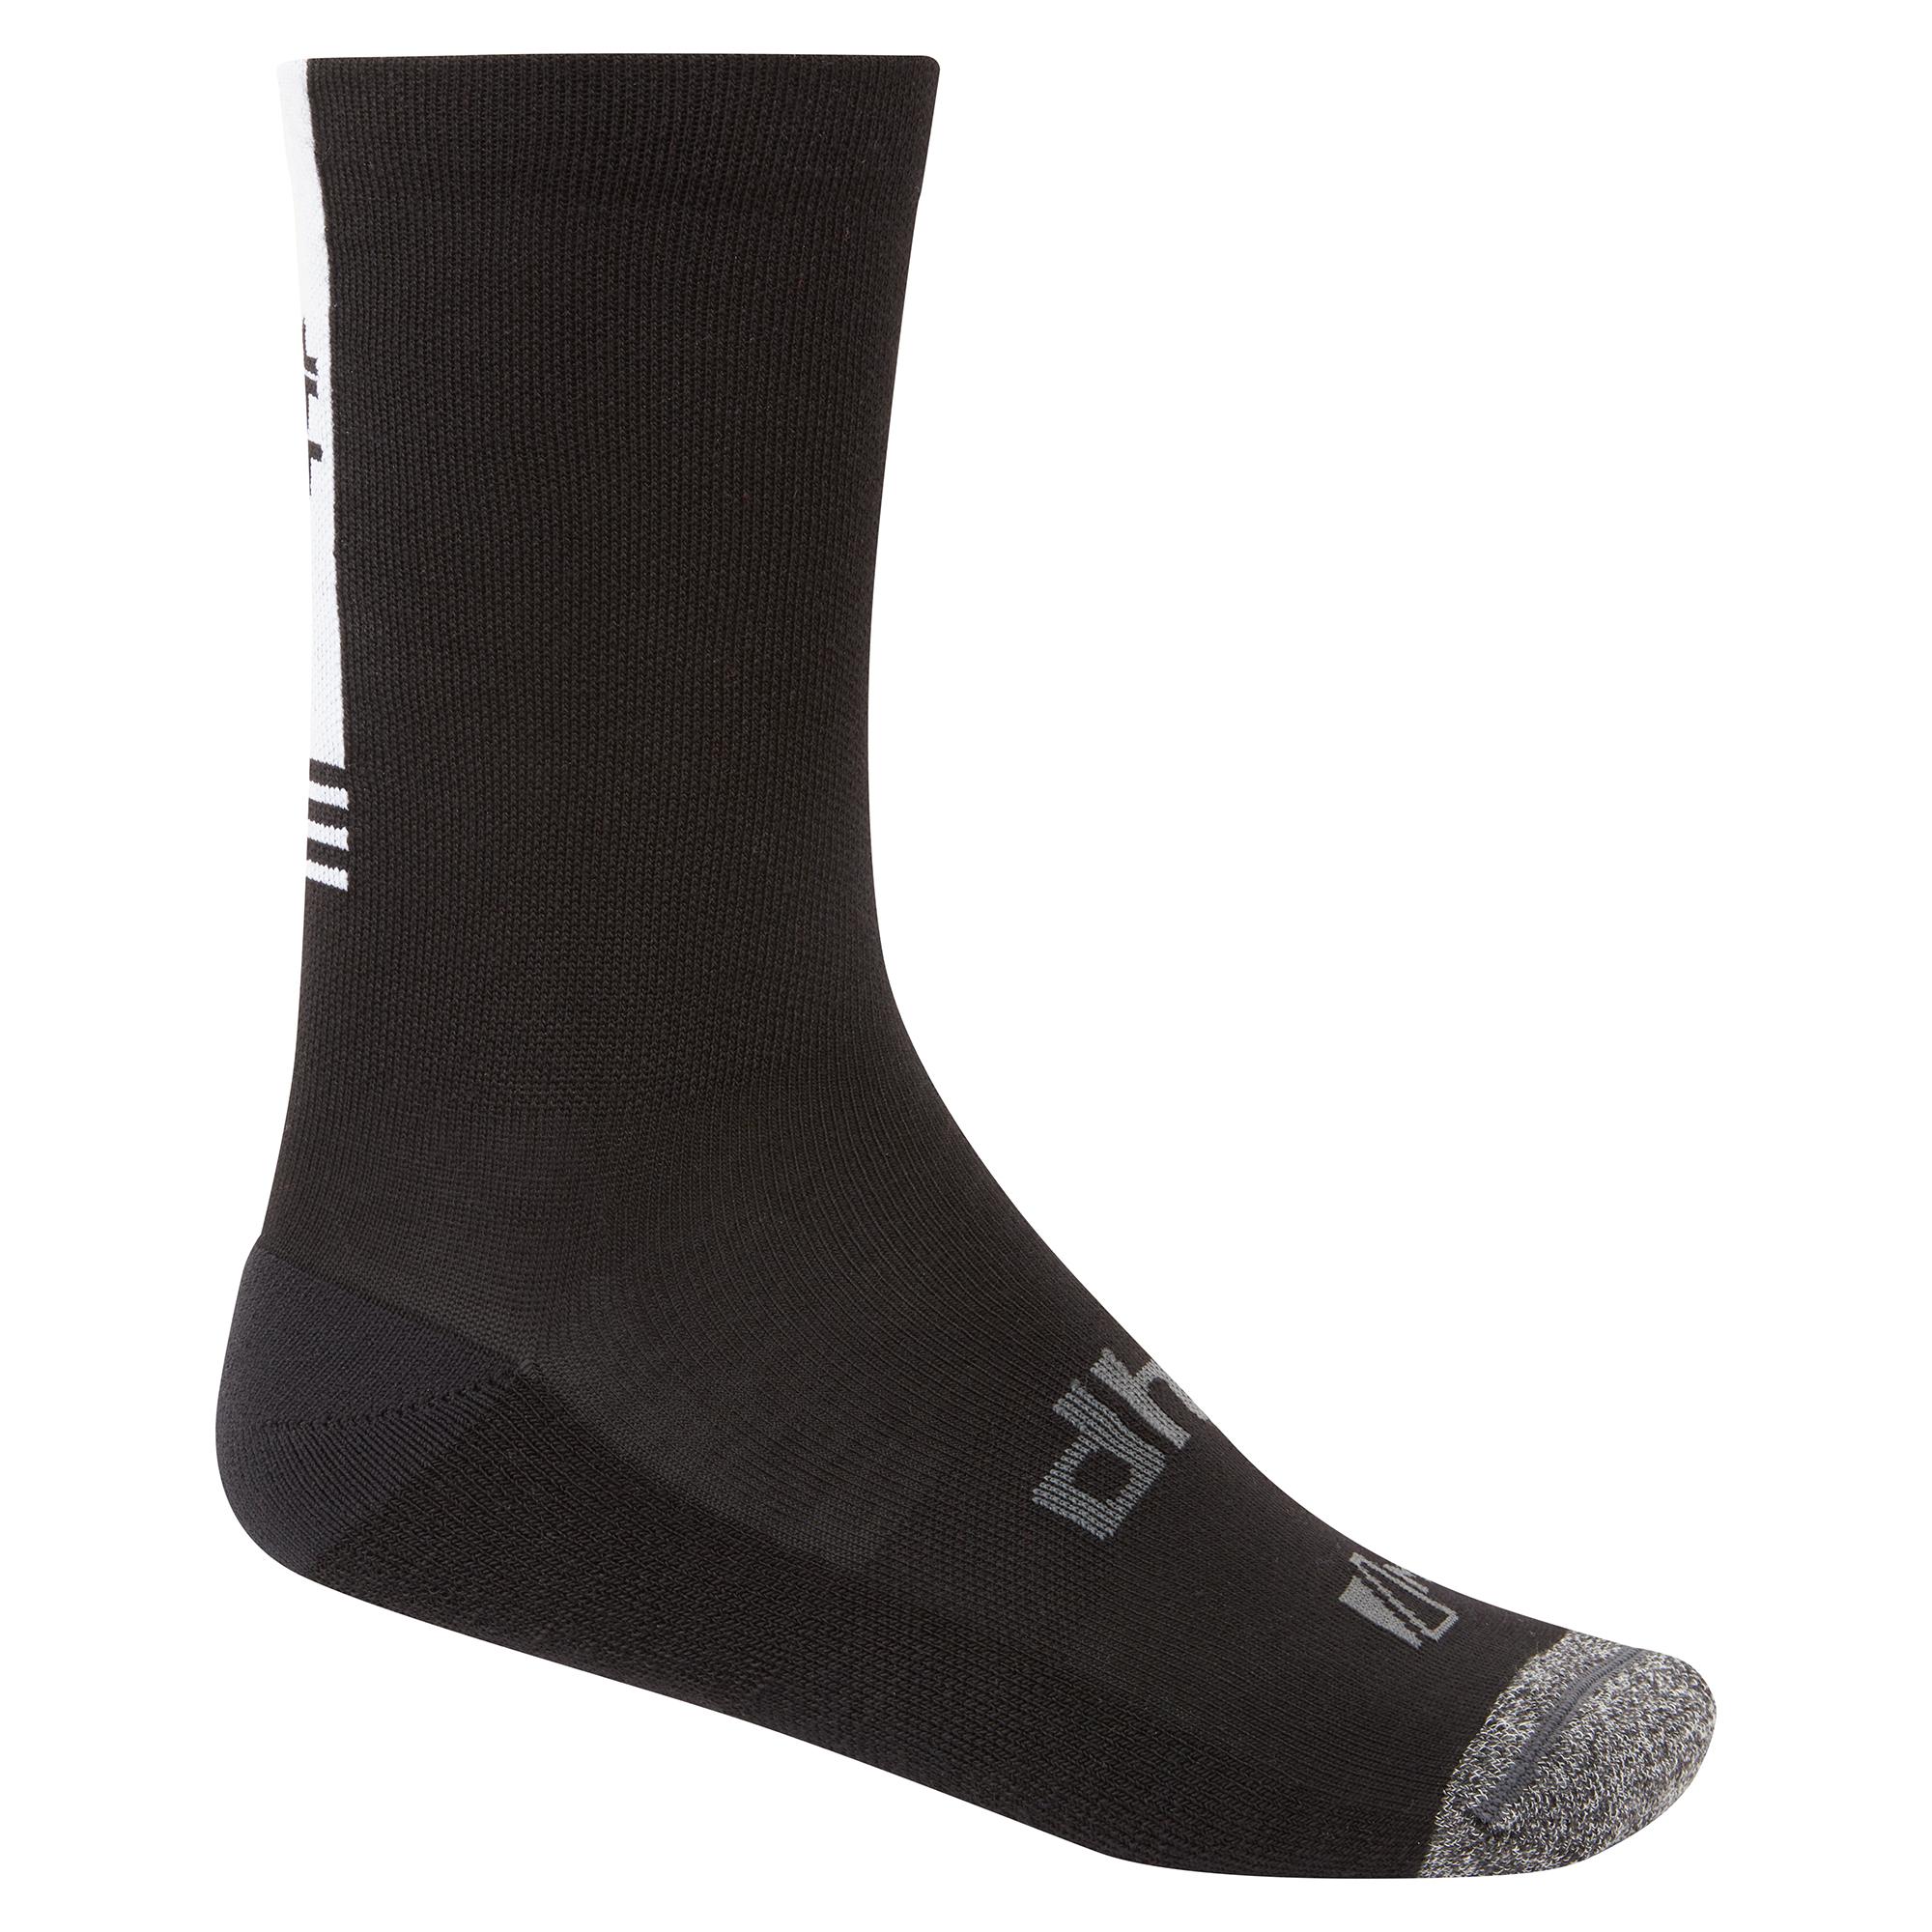 Dhb Aeron Winter Weight Merino Sock 2.0 - Black/white